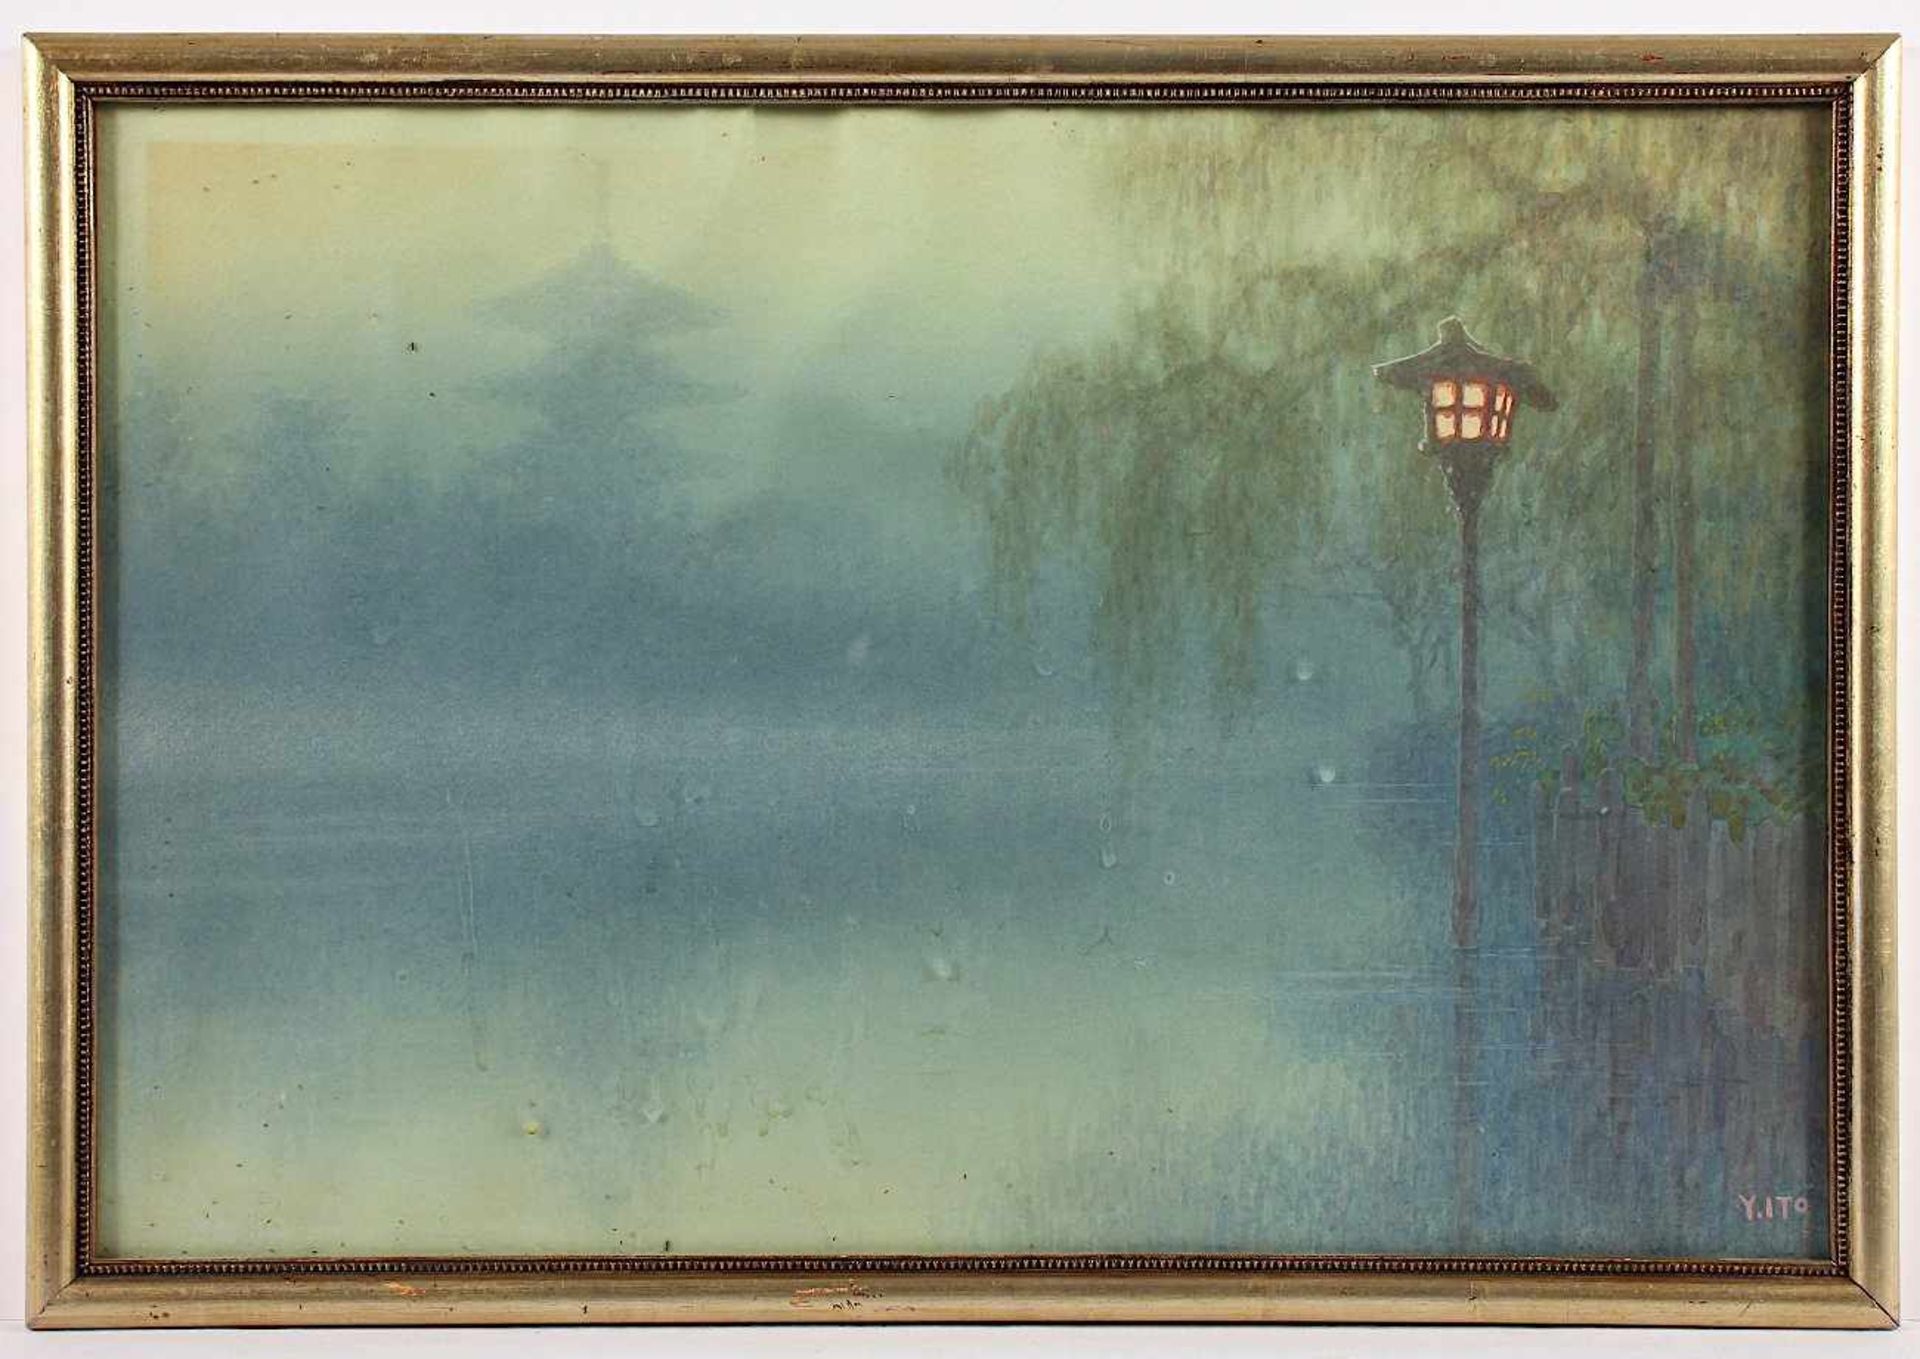 YUHAN ITO (1867-1942), Landschaft mit Laterne und Tempel, Aquarell auf Papier, 32 x 49, min.